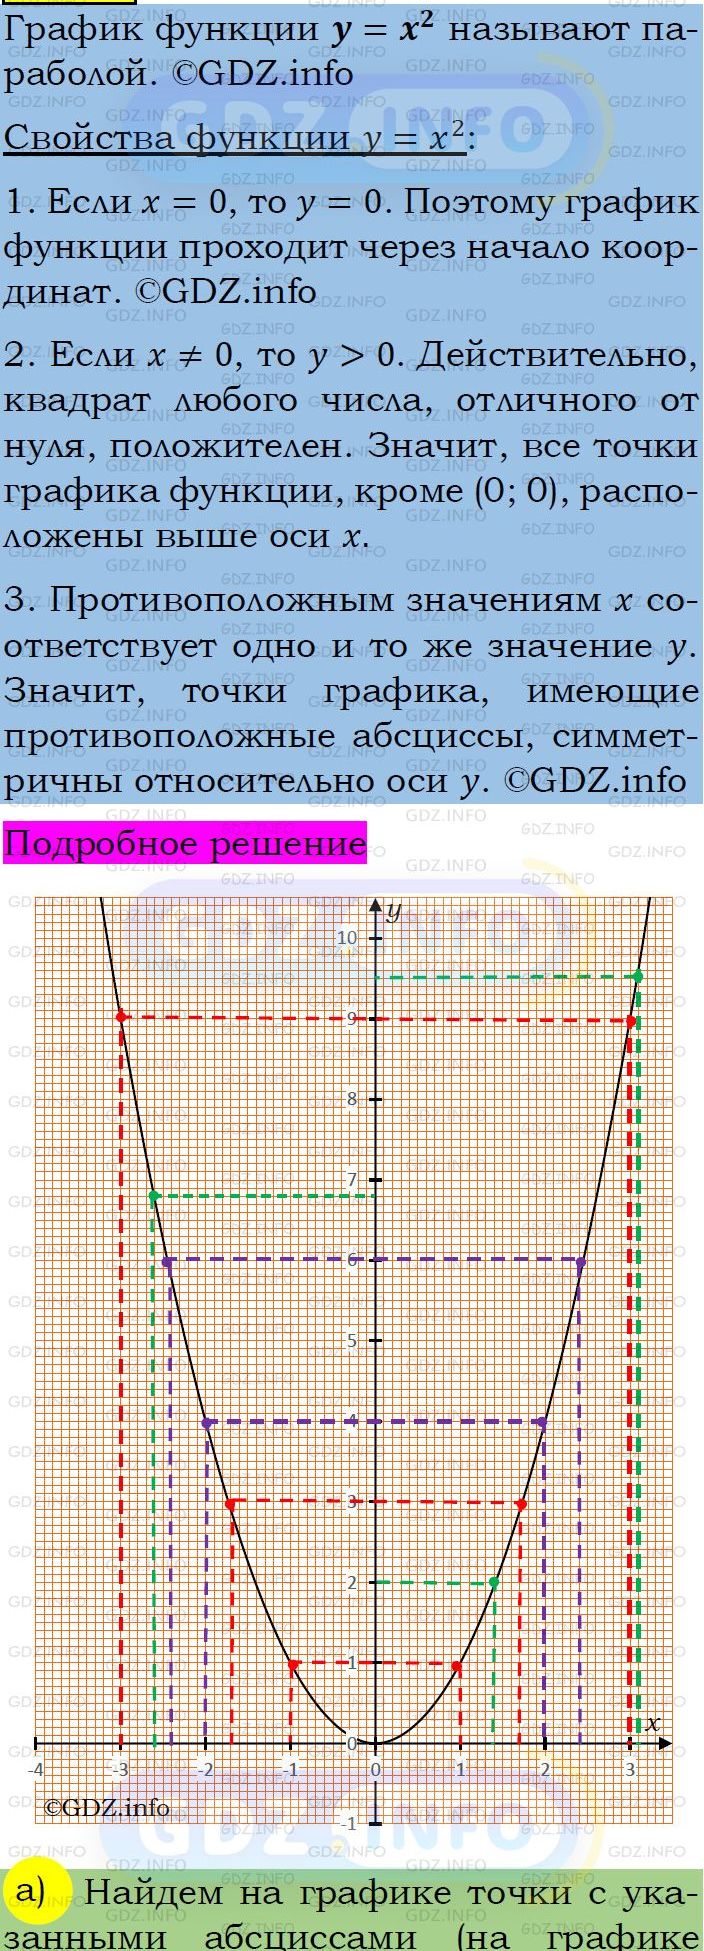 Фото подробного решения: Номер задания №500 из ГДЗ по Алгебре 7 класс: Макарычев Ю.Н.